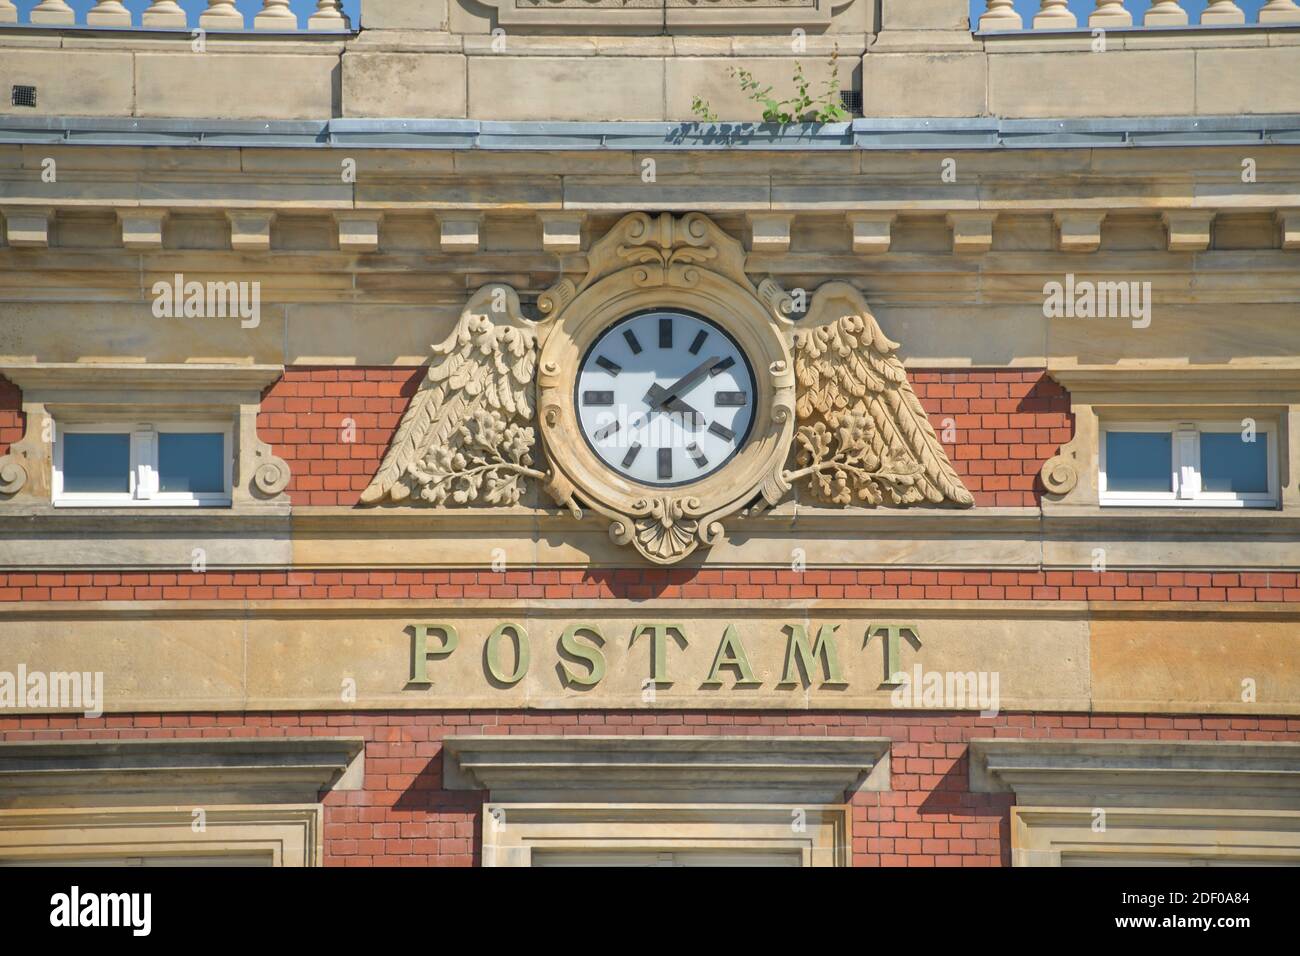 Postamt, Postplatz, Görlitz, Sachsen, Deutschland Foto Stock